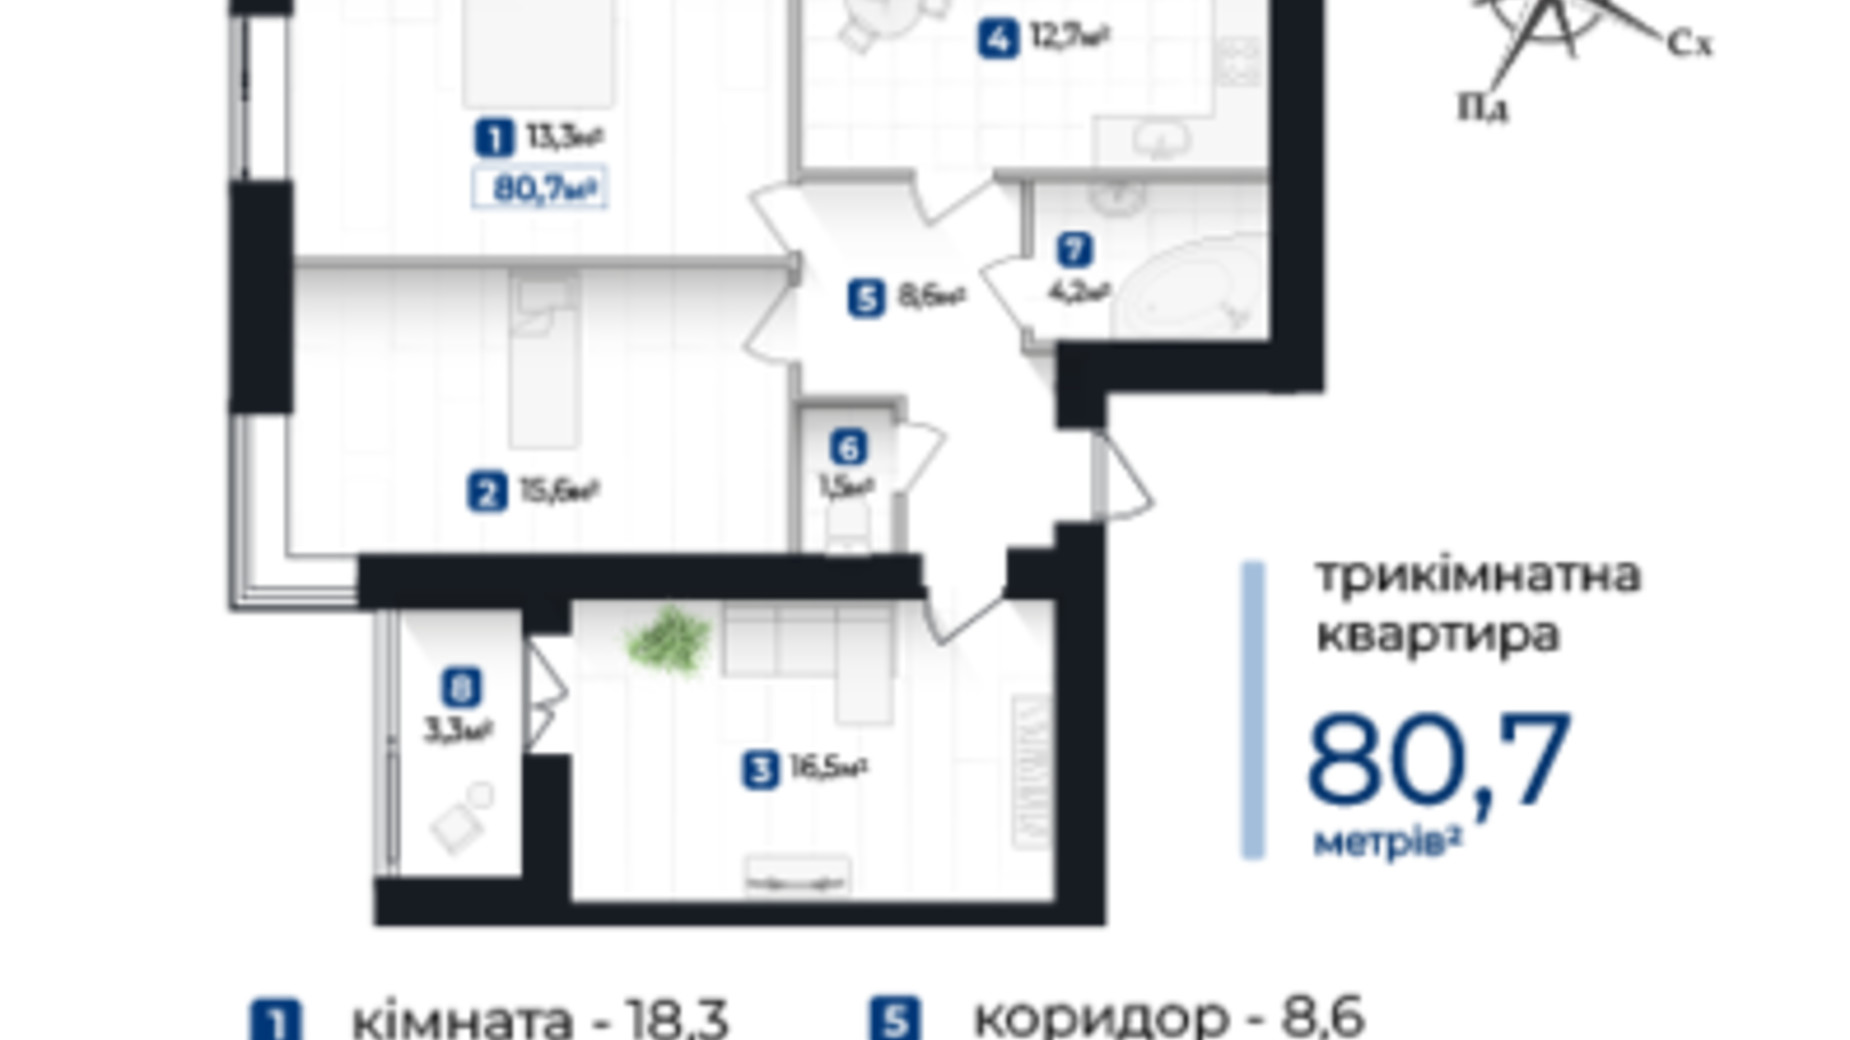 Планировка 3-комнатной квартиры в ЖК Козацкий 80.7 м², фото 610089